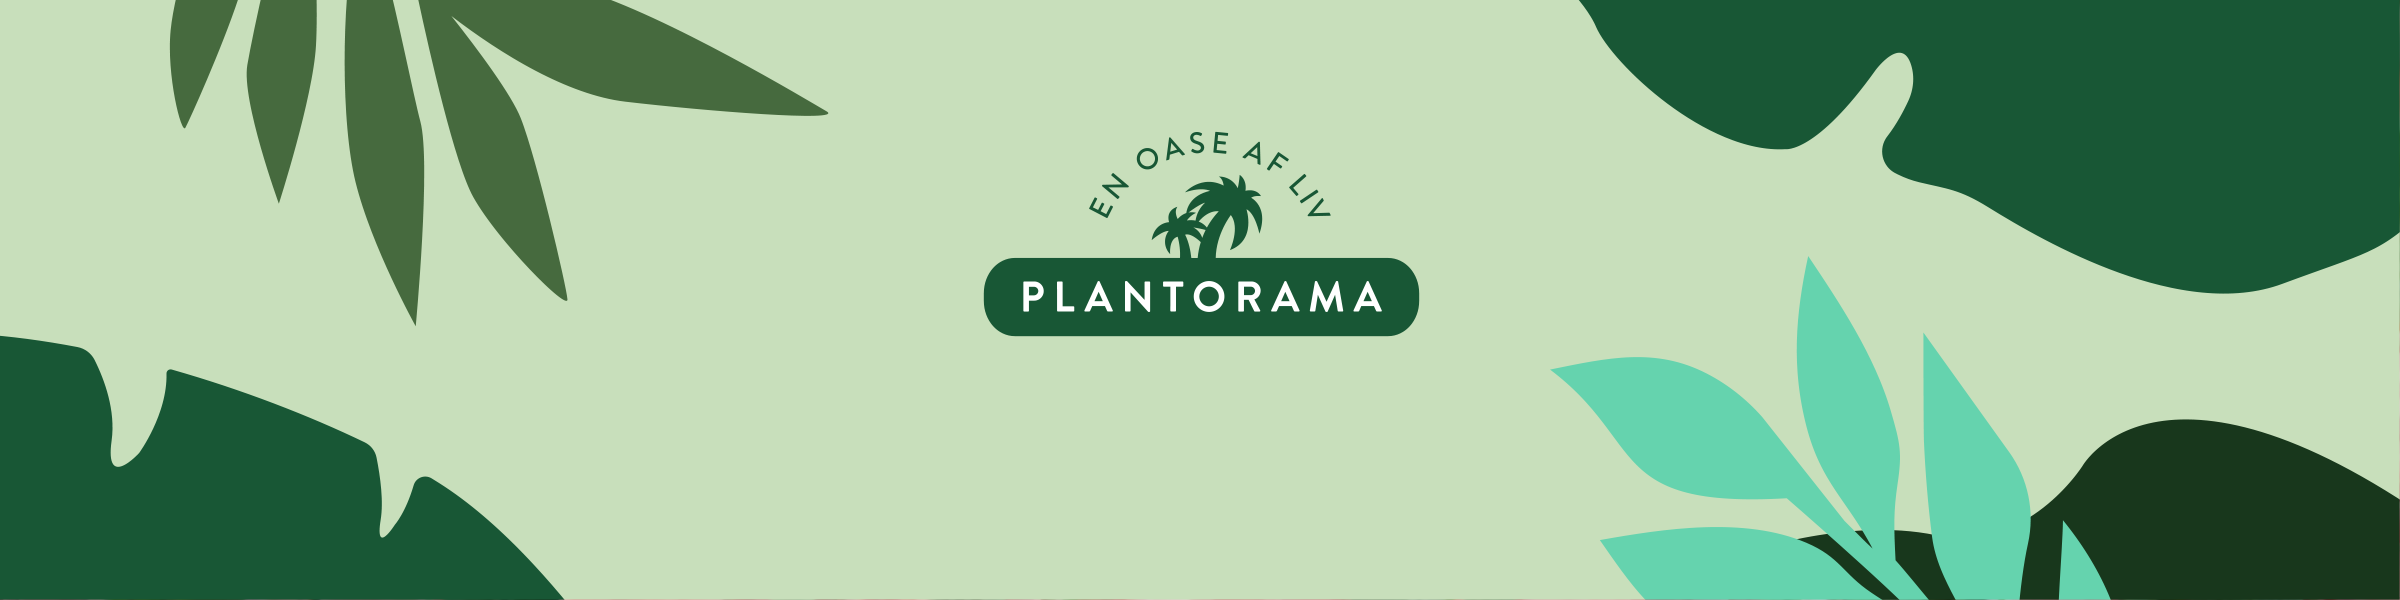 Plantorama A/S Horsens